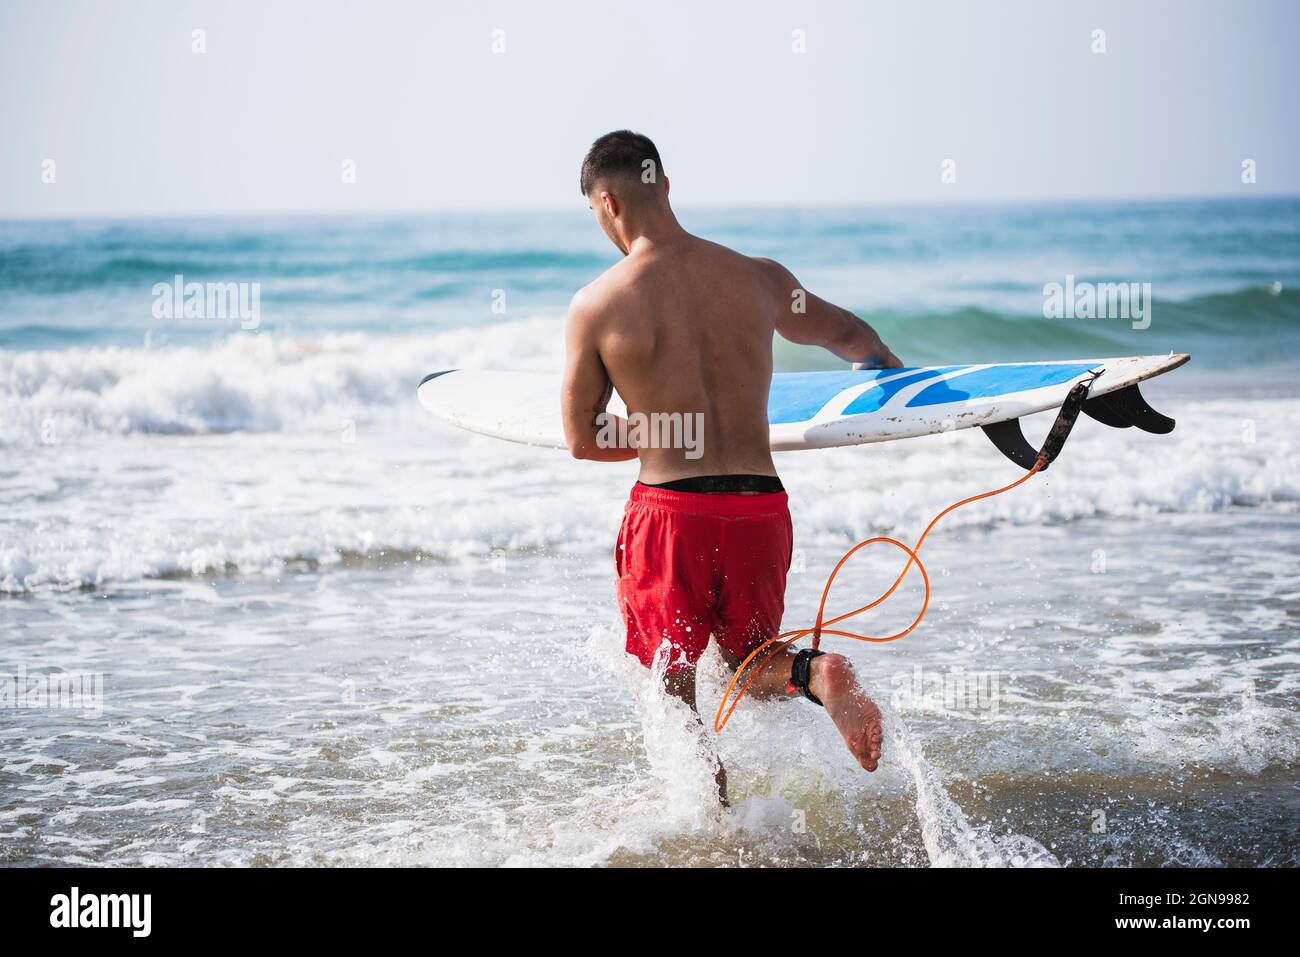 Rückansicht eines jungen Mannes, der ins Wasser läuft, um zu surfen. Stockfoto